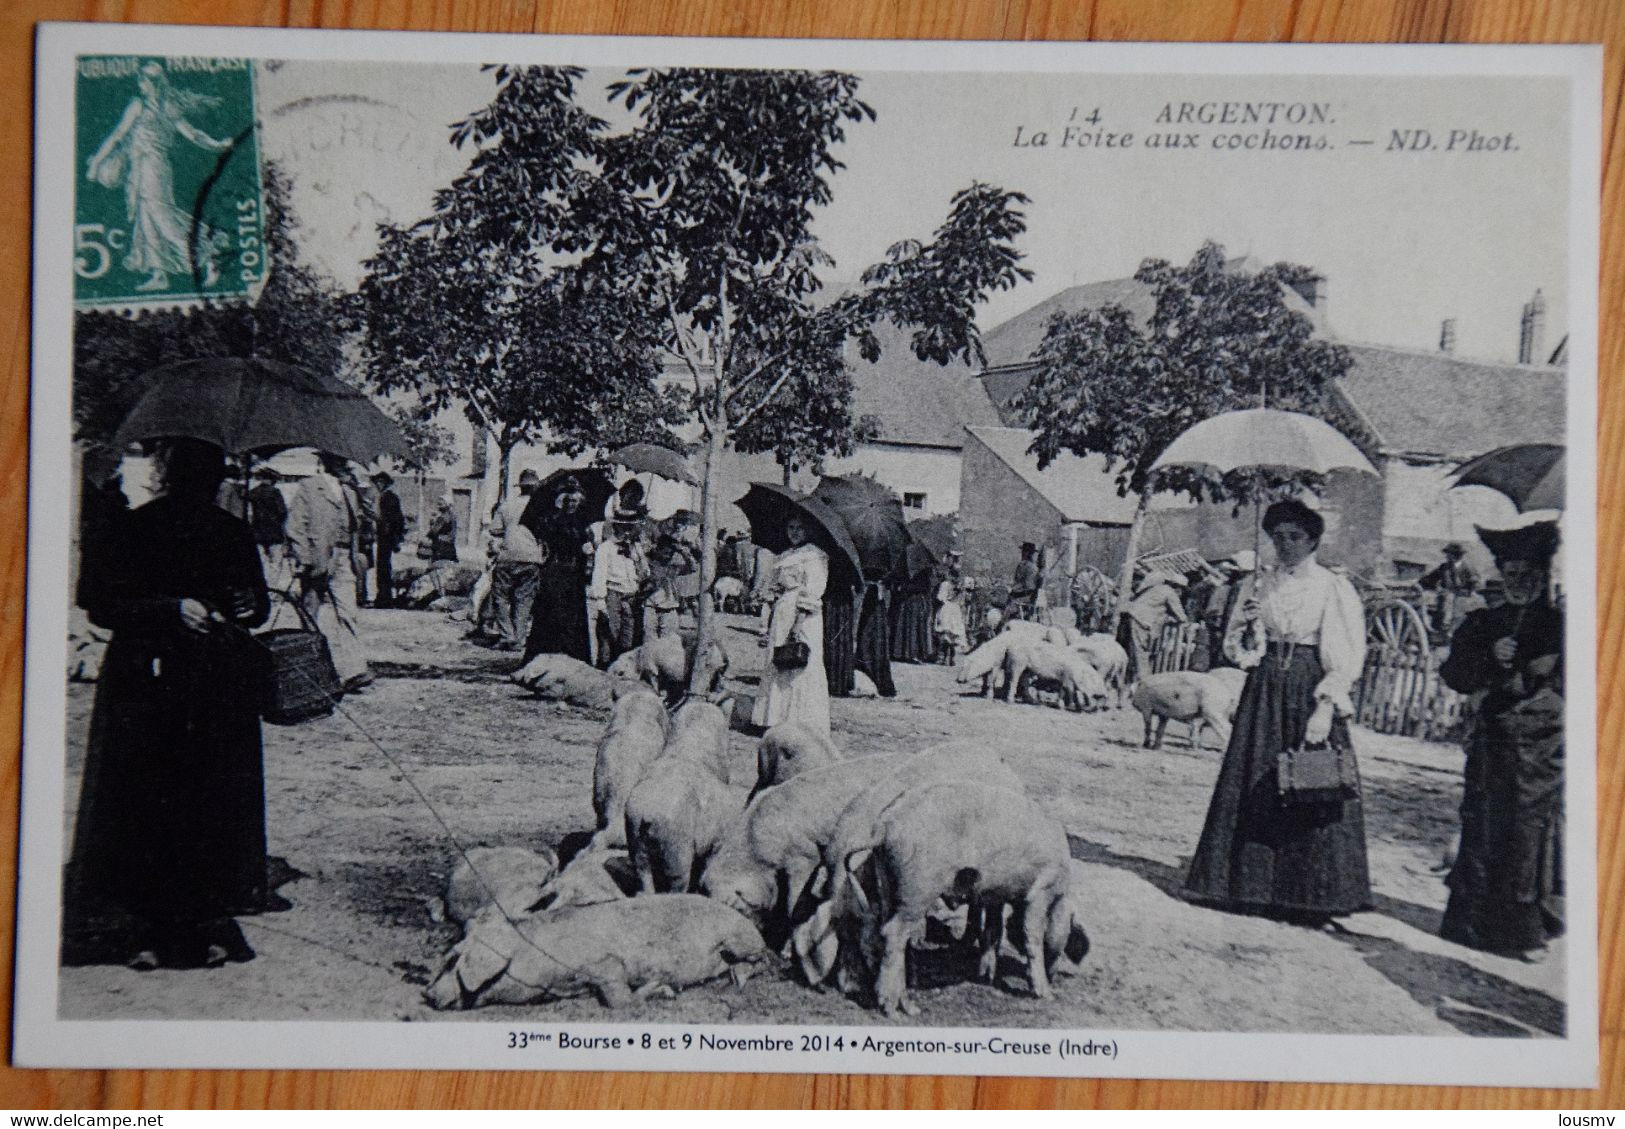 Argenton-sur-Creuse - 33e Bourse Cartes Postales Timbres - Foire Aux Cochons - Timbre & Cachet Commémoratifs - (n°25477) - Bourses & Salons De Collections